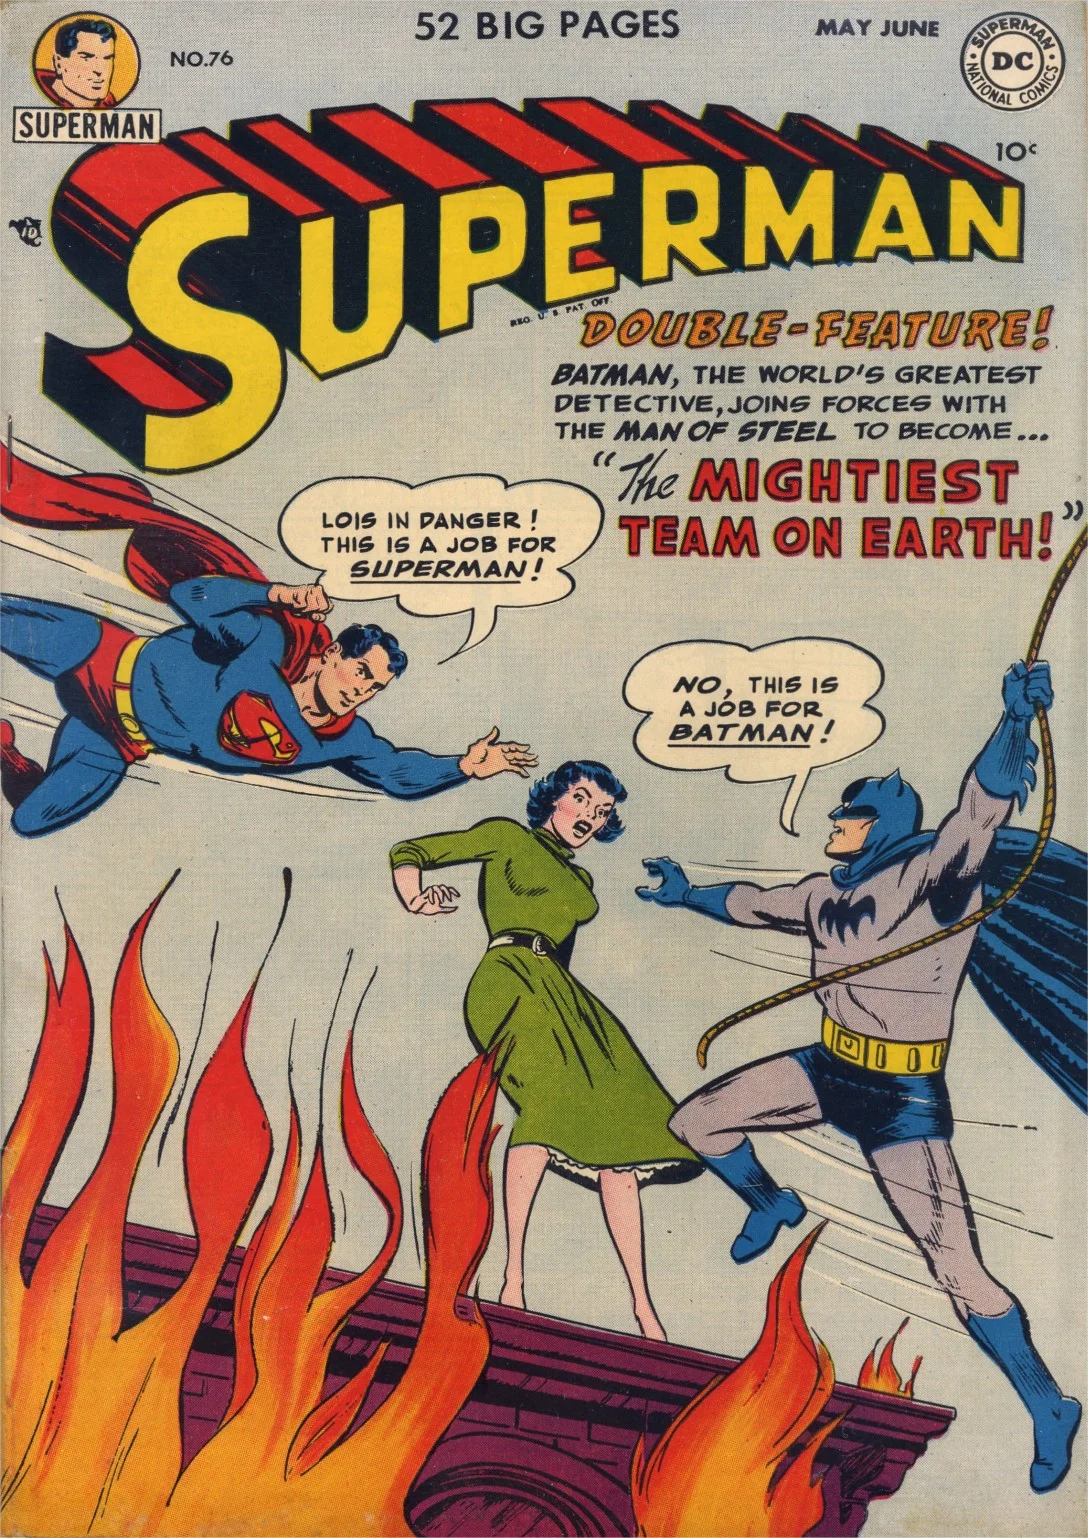 История Супермена и эволюция его образа в комиксах - фото 18